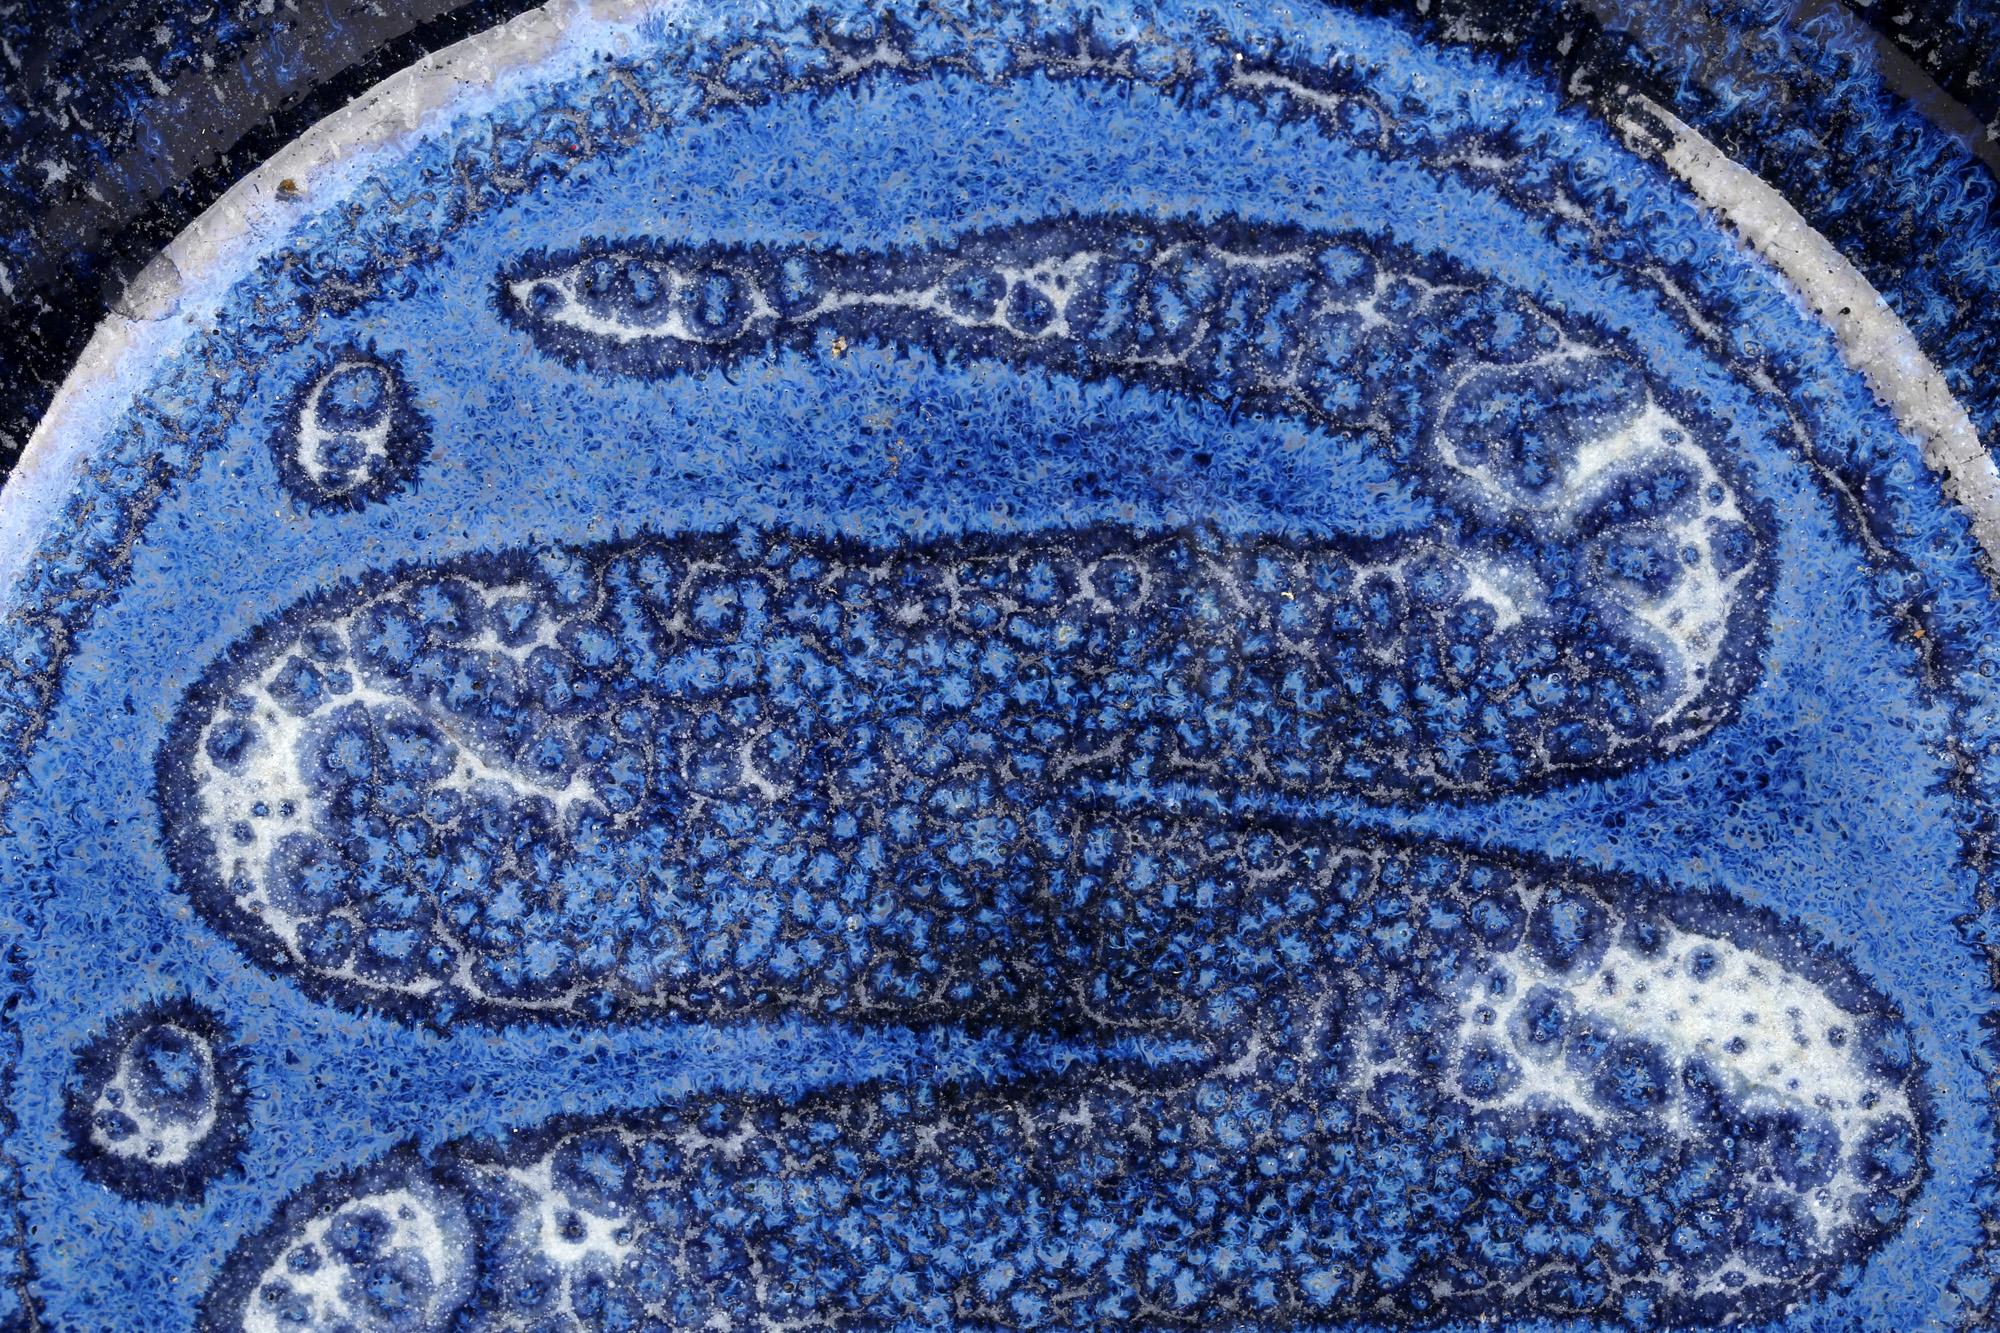 Un élégant bol en poterie anglaise de studio, décoré de glaçures bleues avec un motif de serpent traînant, par William Illesley (britannique, né en 1948) et réalisé dans sa poterie de Stamford avant 2005. Le bol en grès est largement arrondi, avec